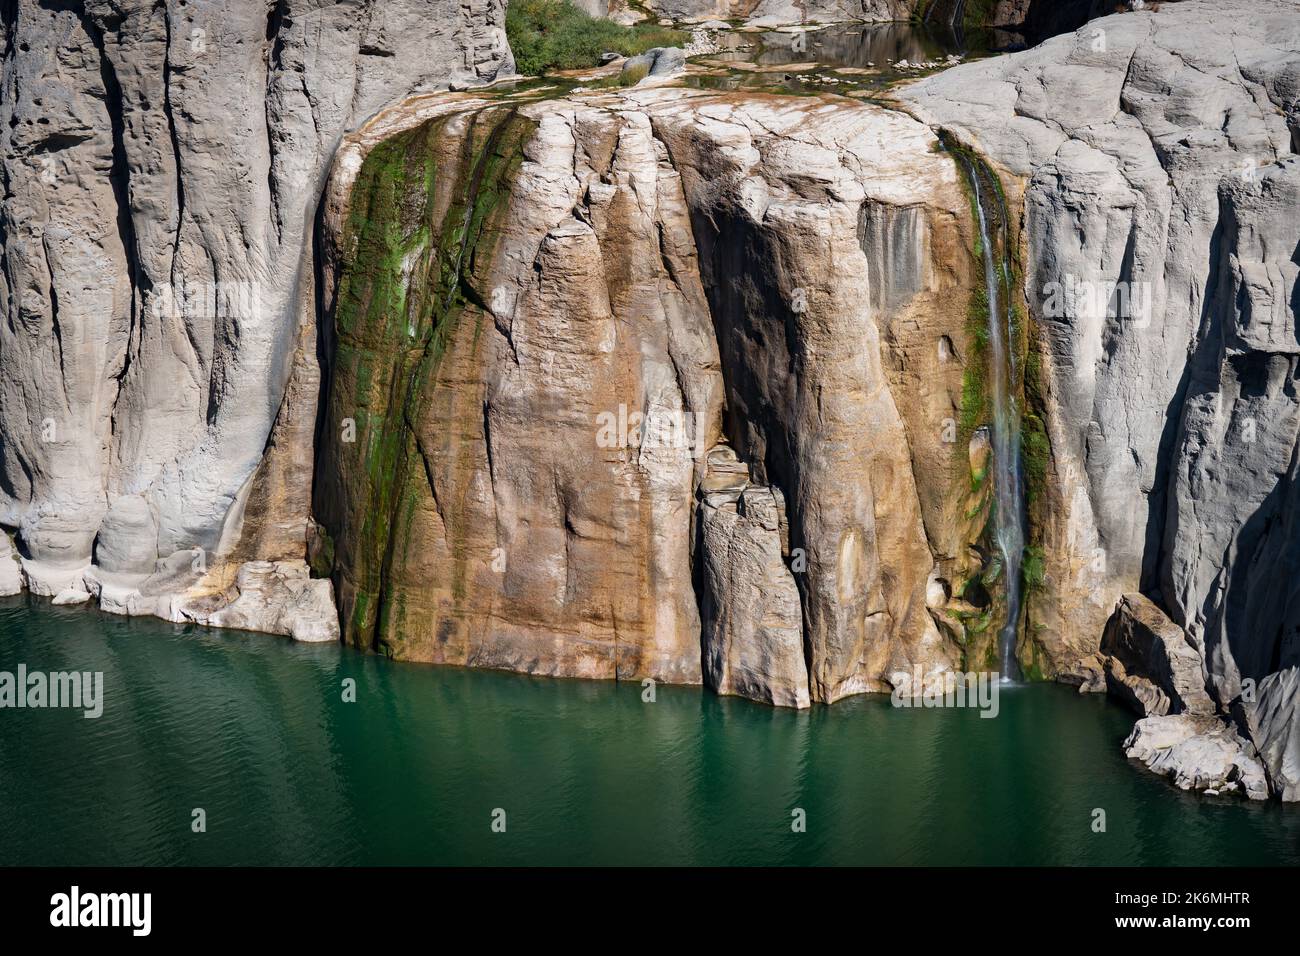 Il ne reste qu'un filet d'eau aux chutes Shoshone, dans l'Idaho, en octobre Banque D'Images